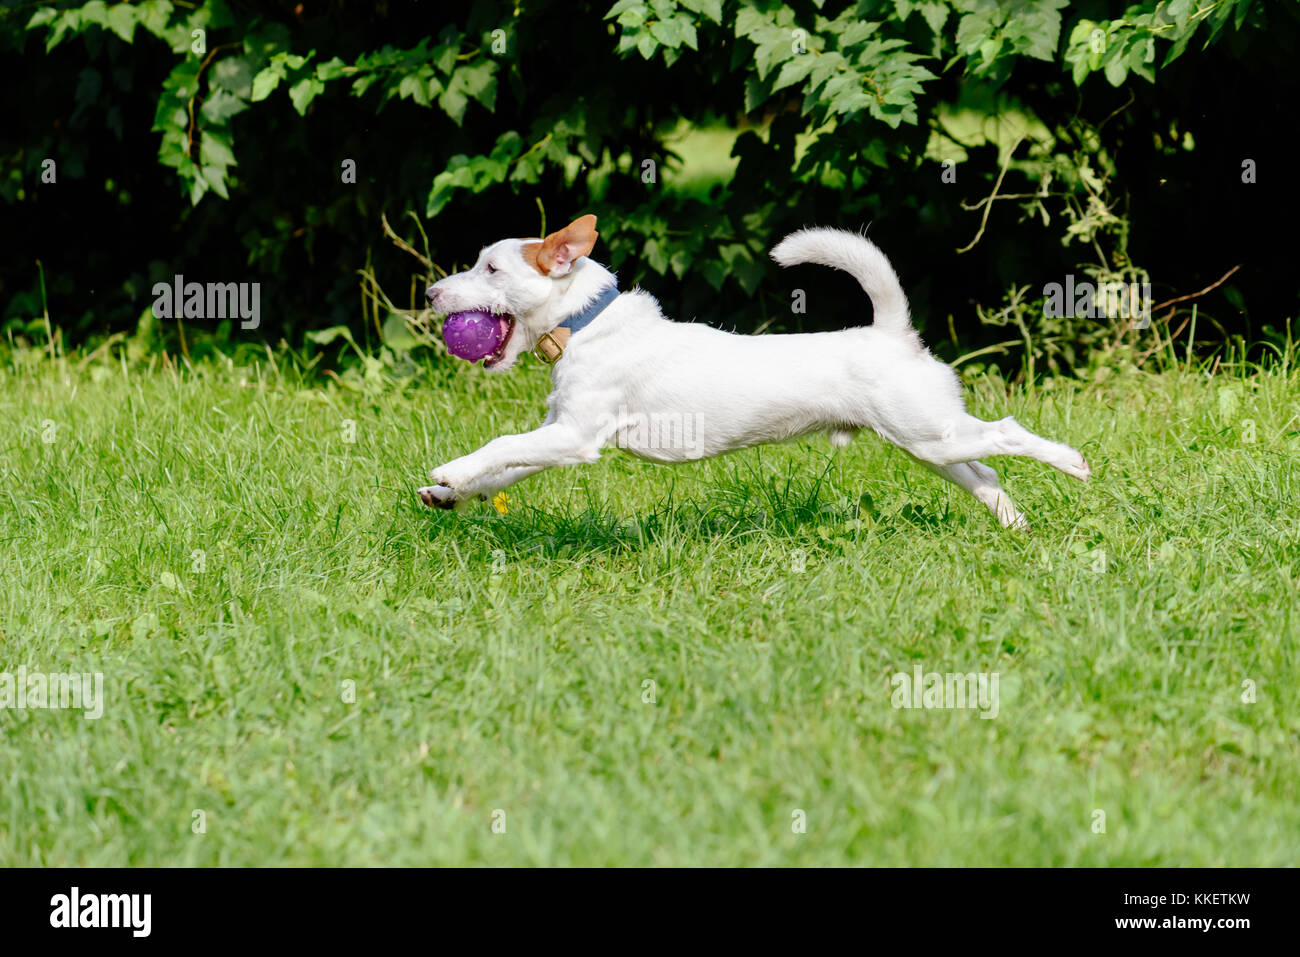 Vue latérale du chien qui court sur l'herbe verte jouant avec purple ball Banque D'Images